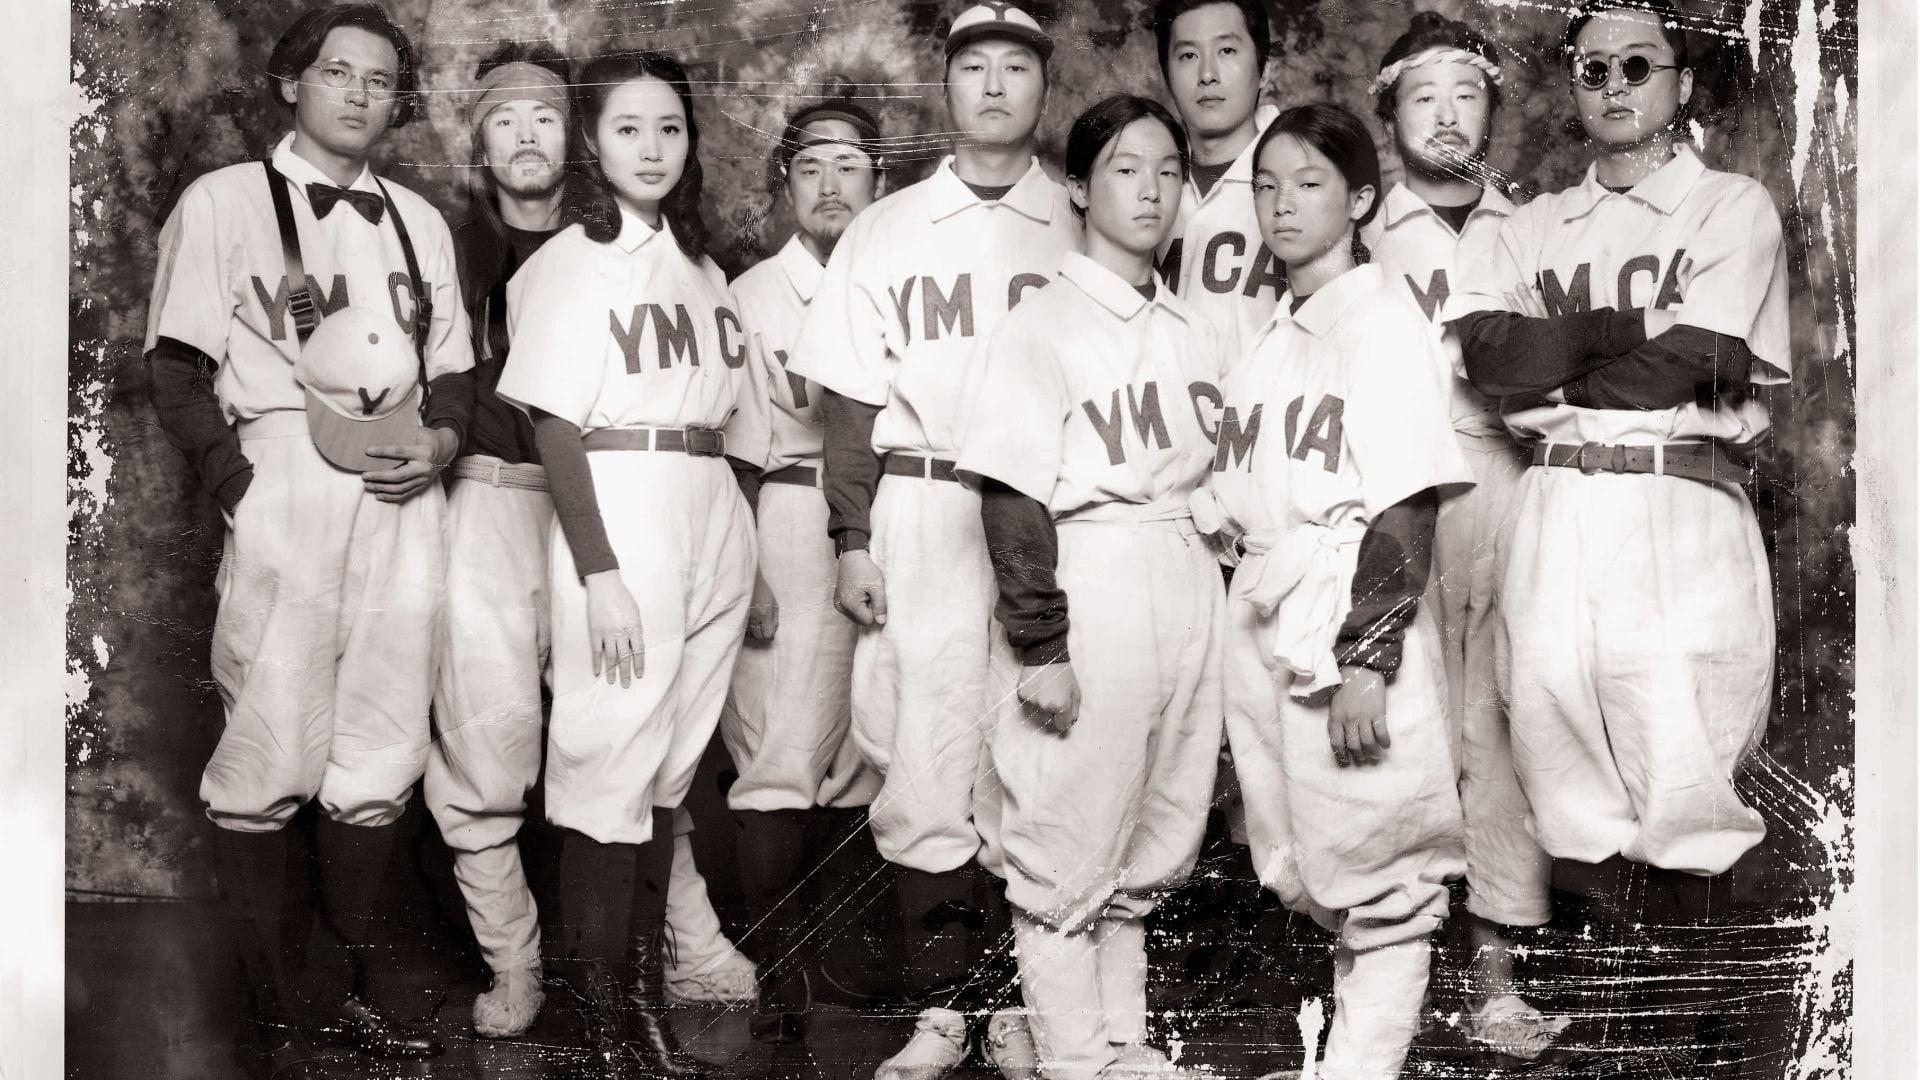 دانلود فیلم کره ای YMCA Baseball Team 2002